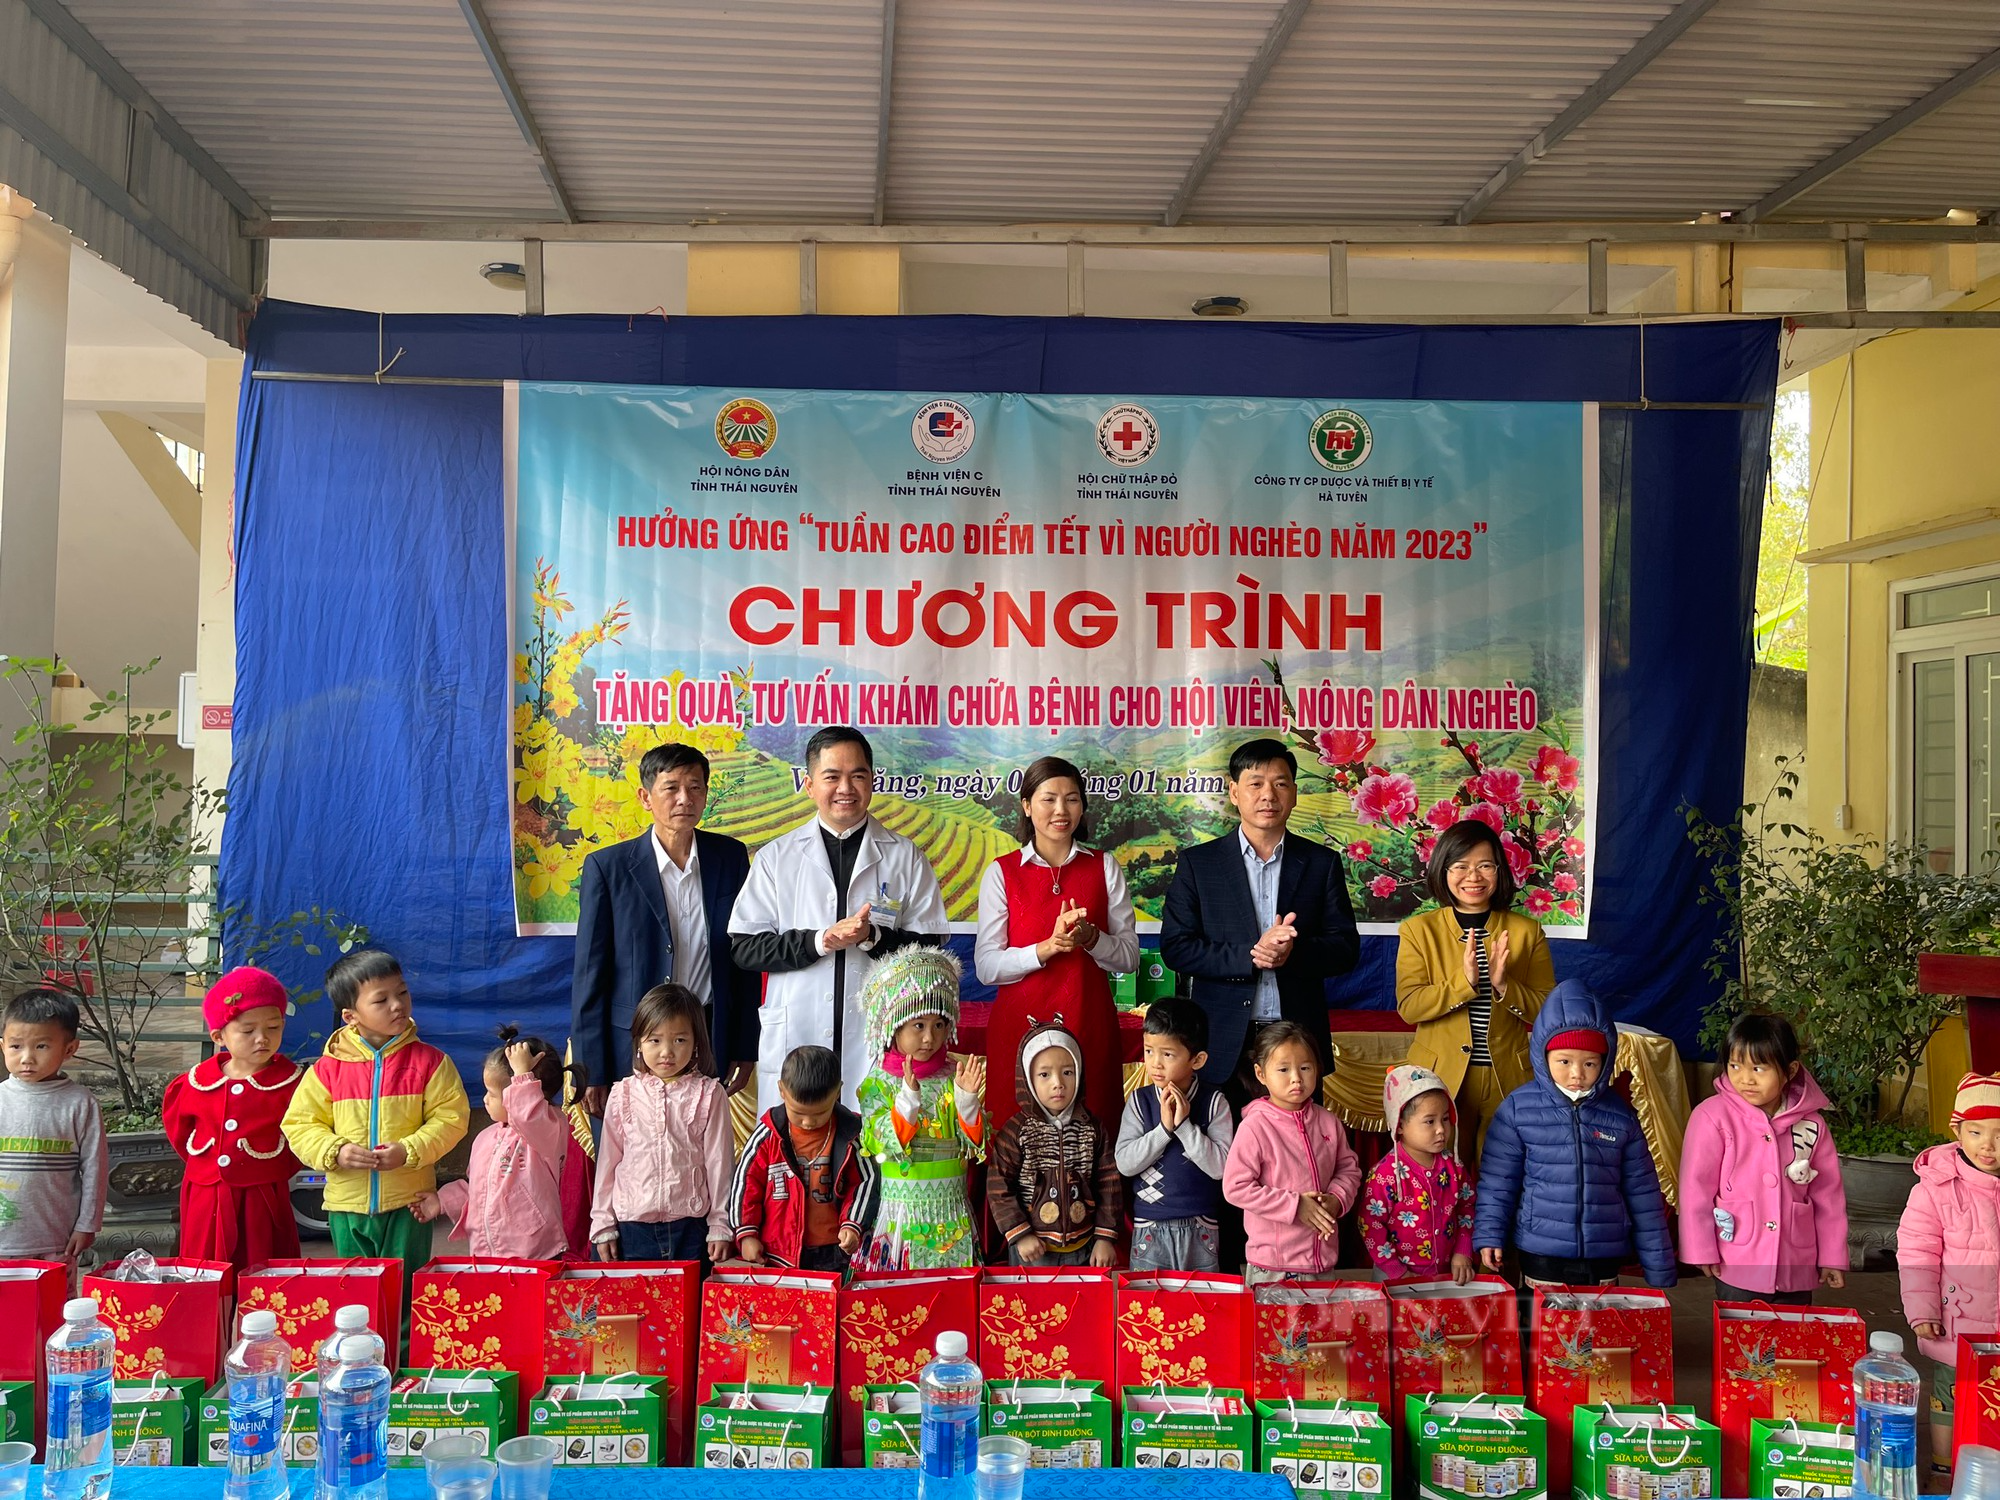 Hội nông dân tỉnh Thái Nguyên tặng quà, khám chữa bệnh miễn phí cho 150 đối tượng chính sách, người có công  - Ảnh 2.